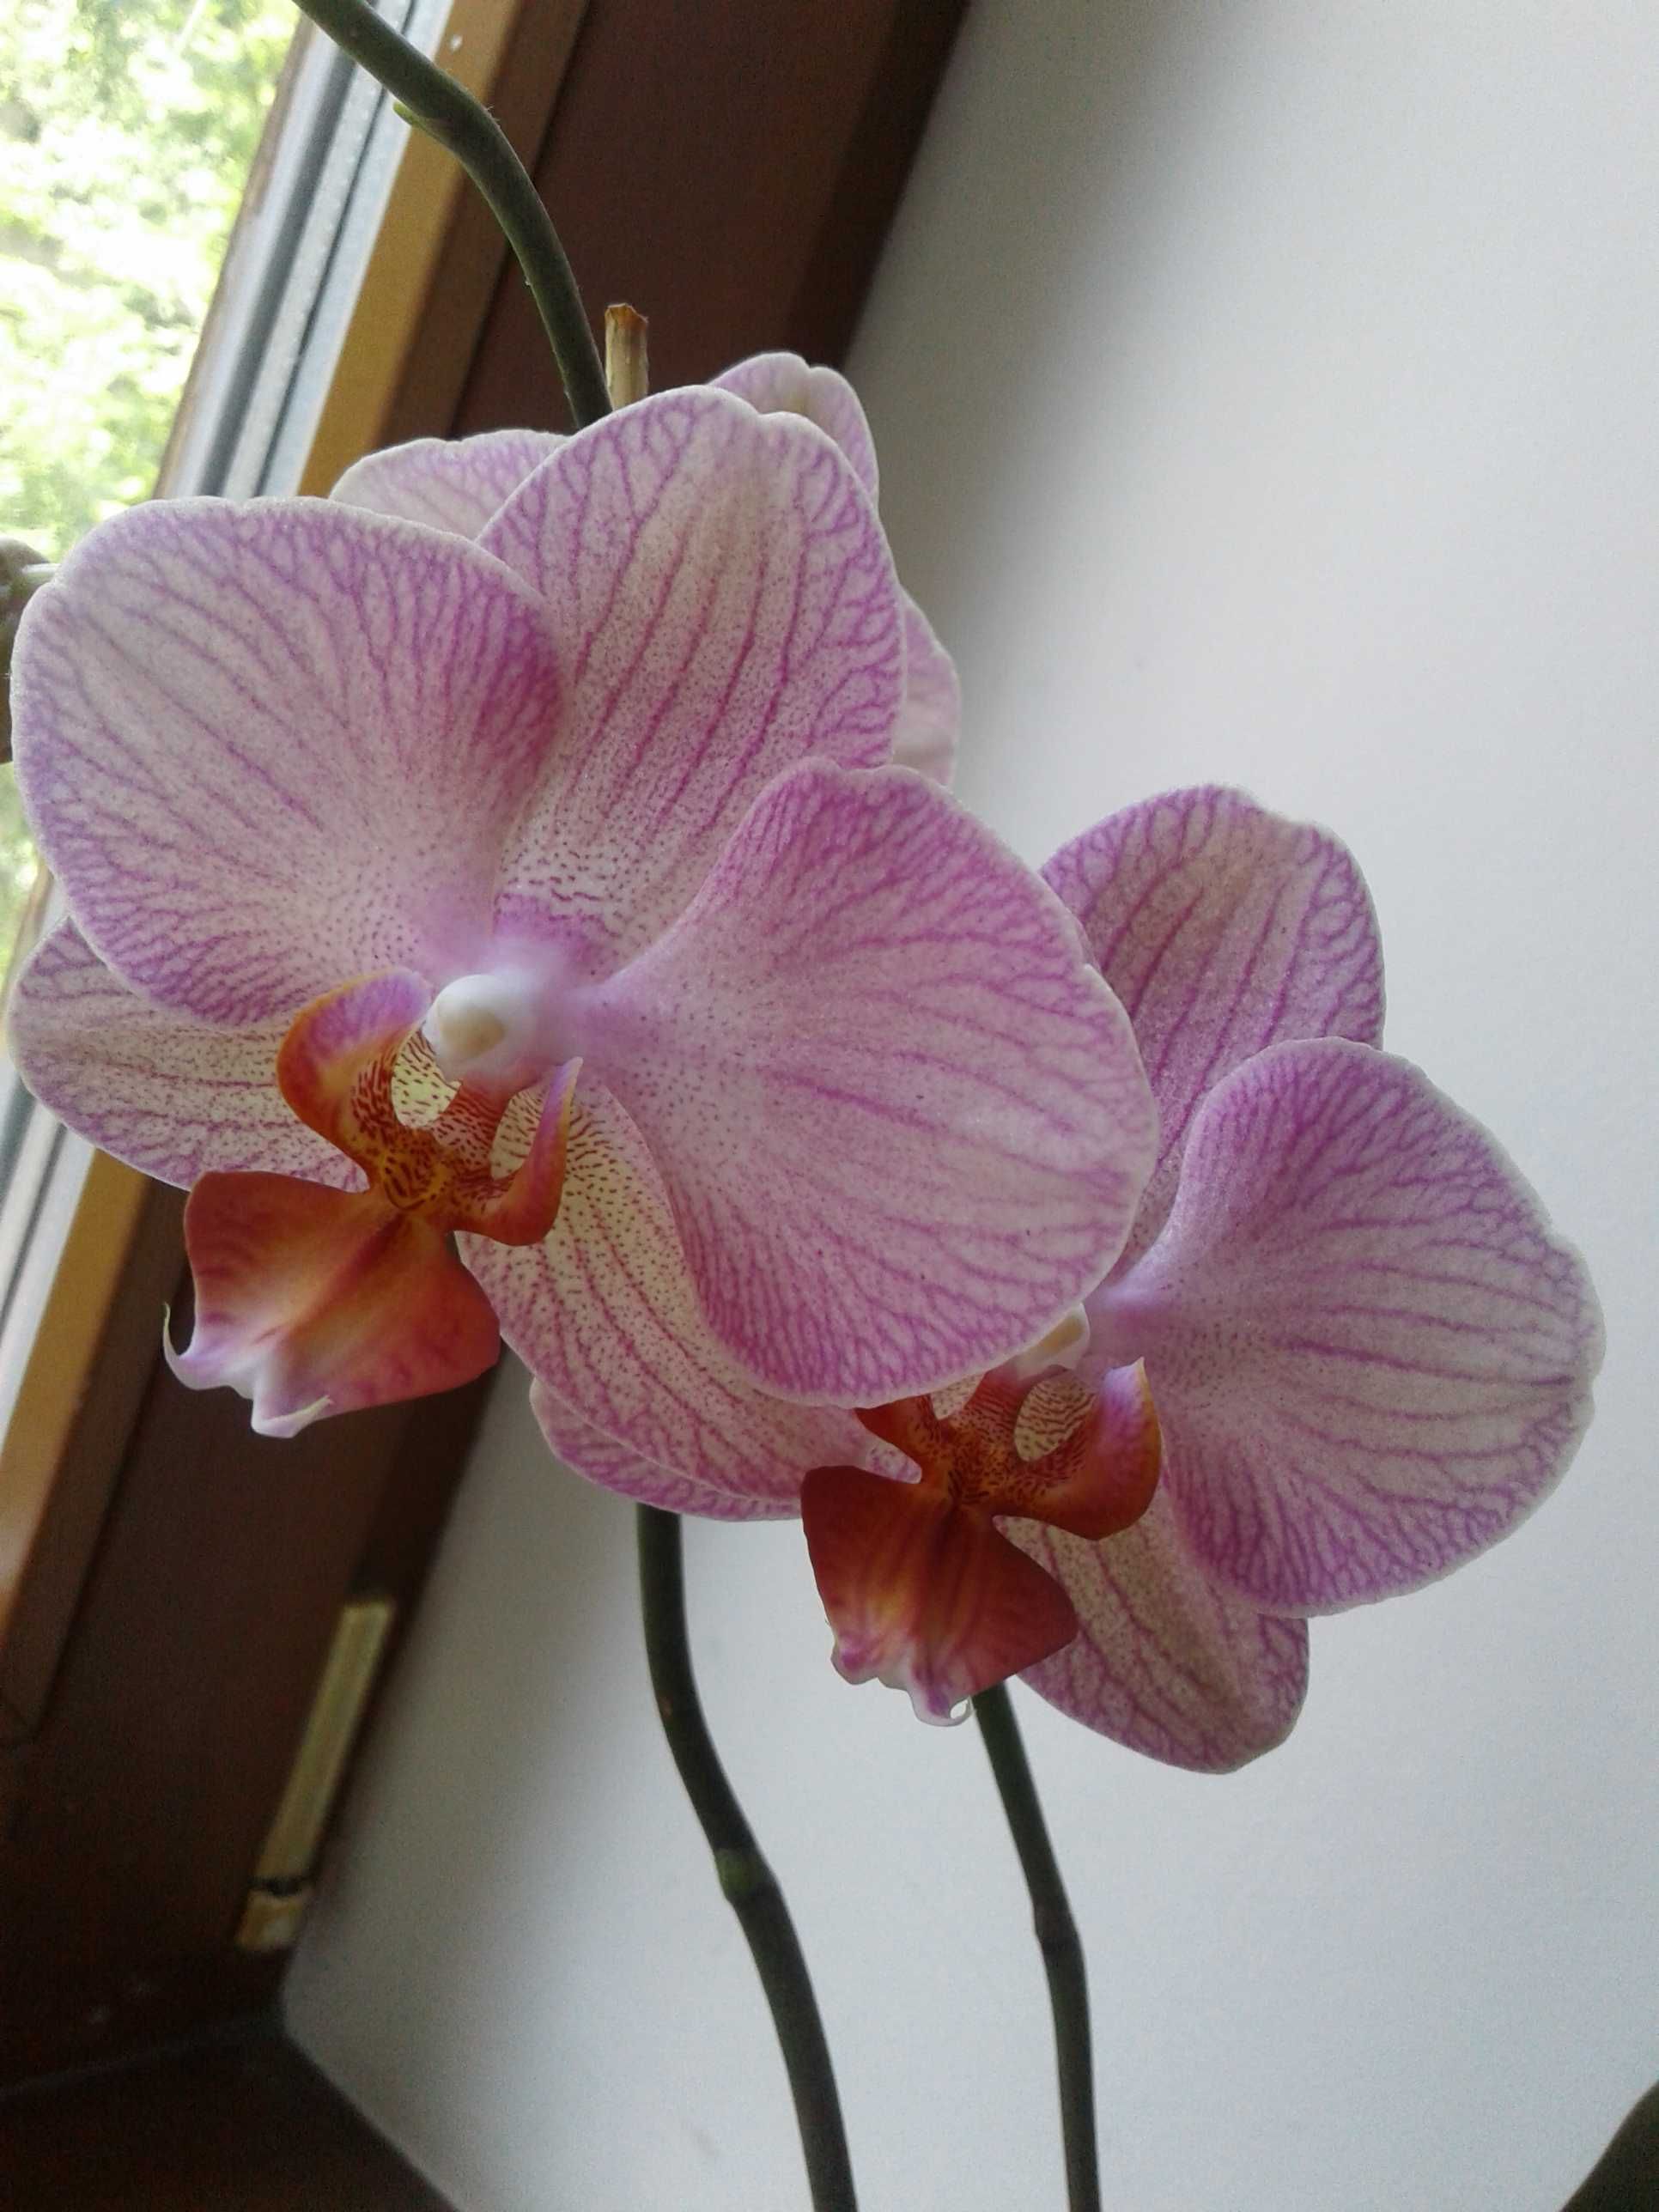 ЦВЕТУЩАЯ сортовая орхидея фаленопсис равелло Salmion восковик